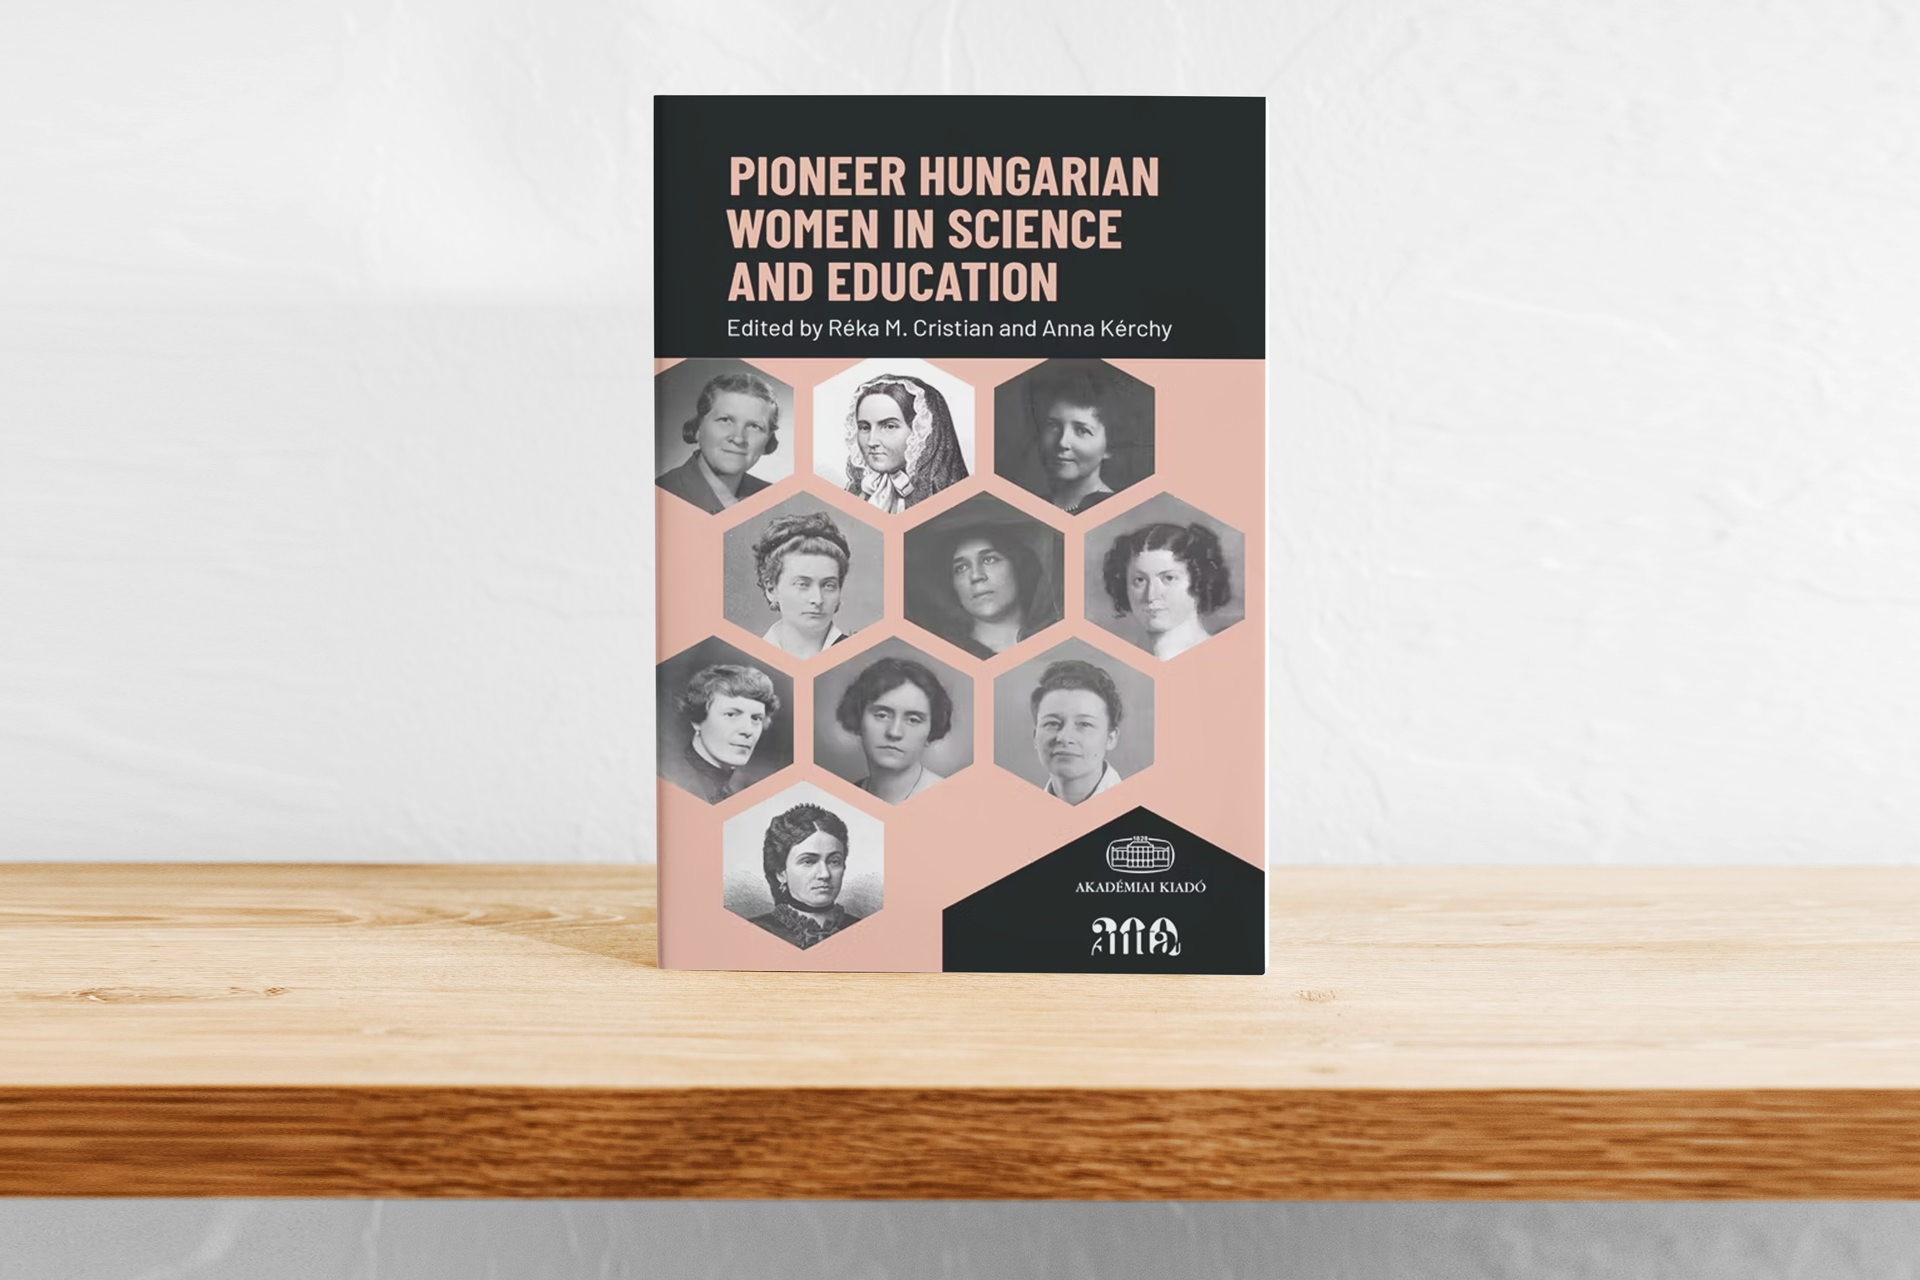 Úttörő magyar nők a tudományban és az oktatásban – életpályák két angol nyelvű kötetben